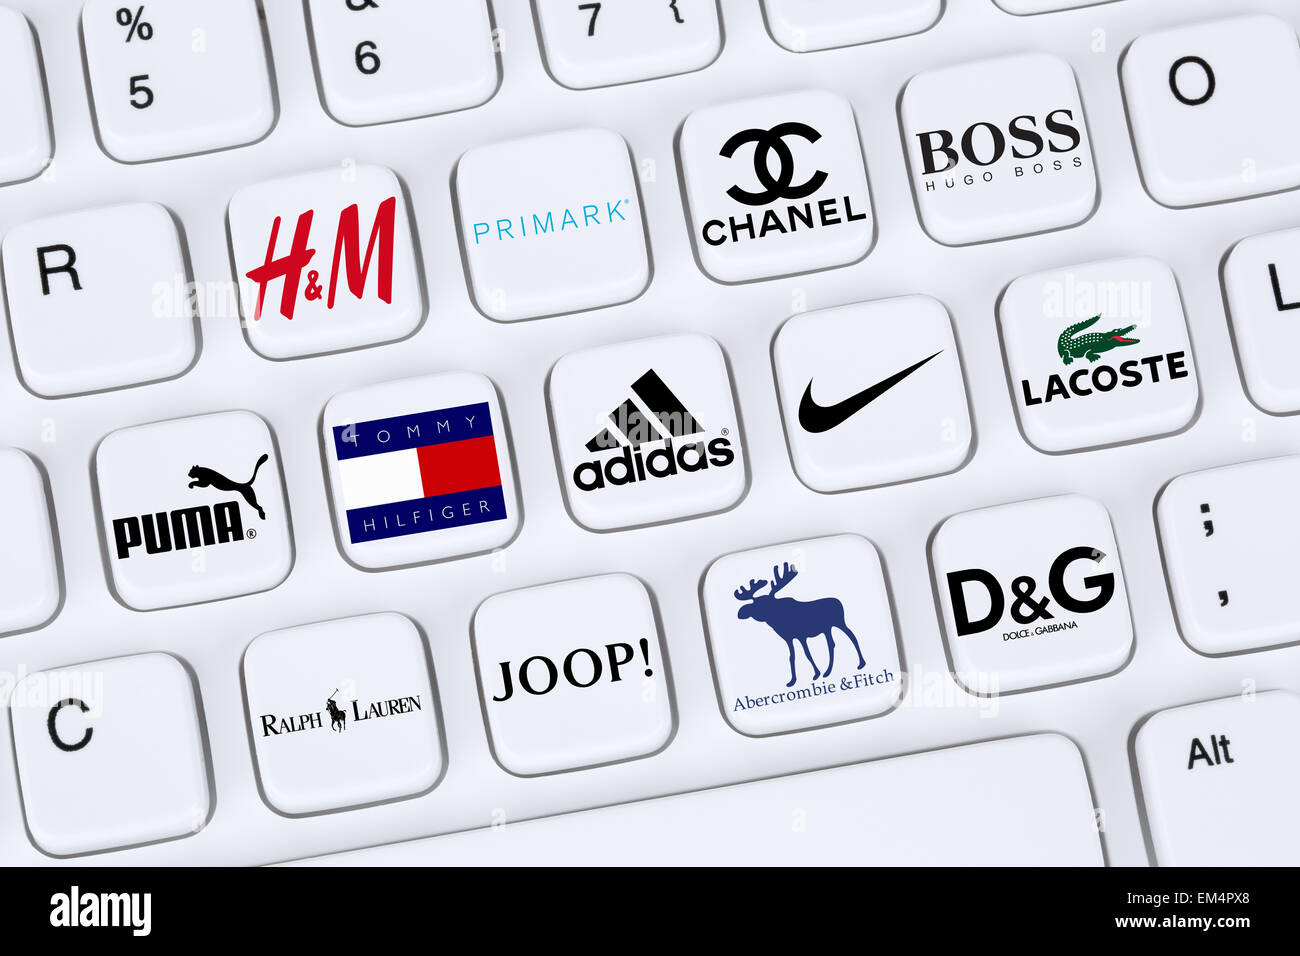 Berlin, Deutschland - 7. April 2015: Sammlung von Logos der Mode-Kleidung- Marken wie Adidas, Puma, Nike, Primark, Abercrombie und Stockfotografie -  Alamy